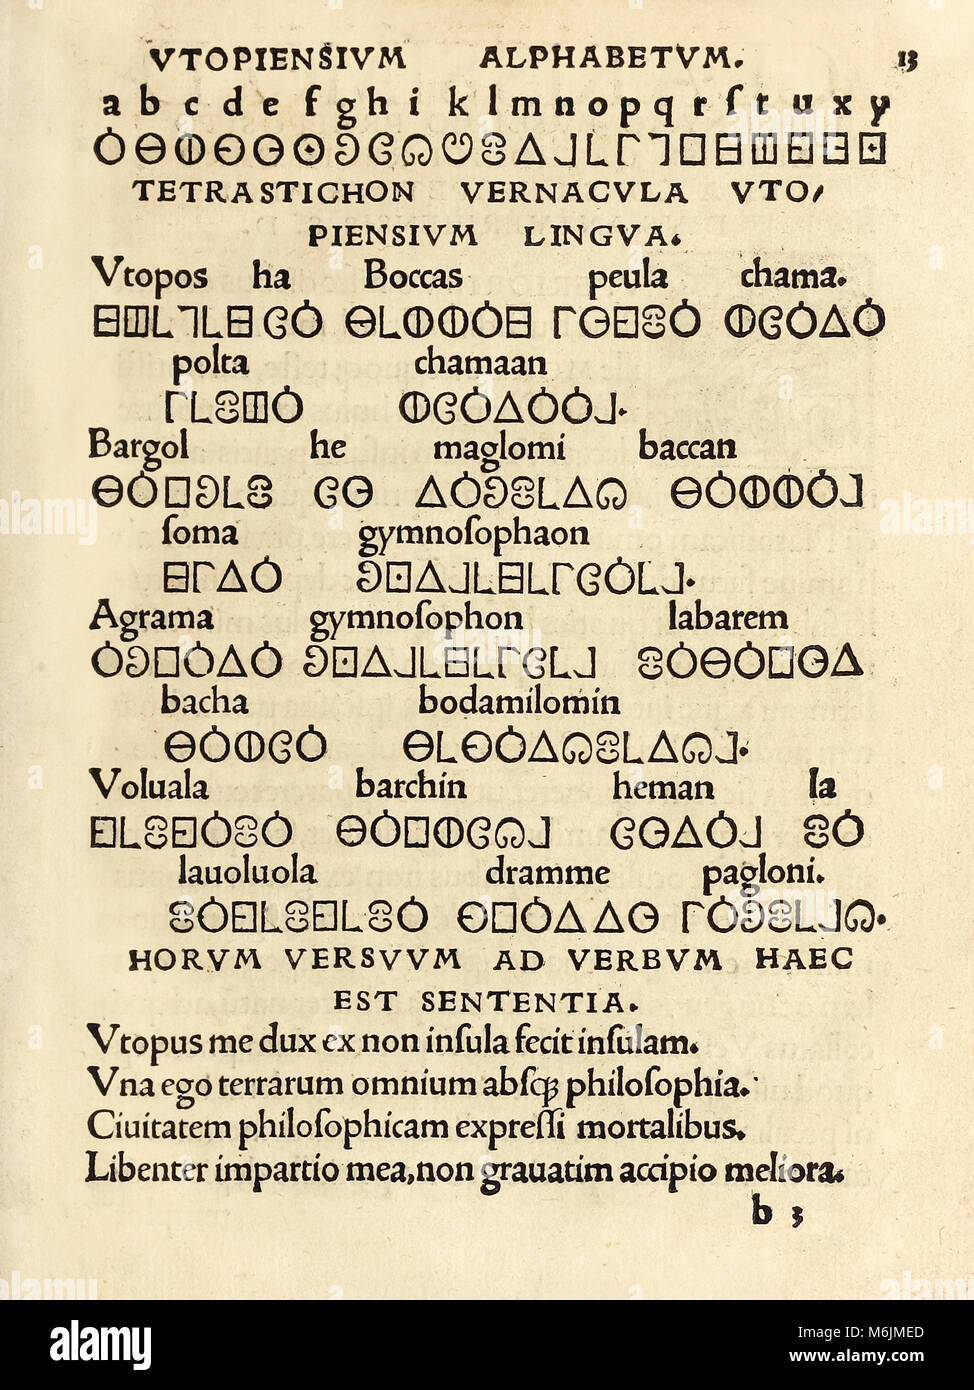 "Utopiensium Alphabetum" (utopische Alphabet) Vom 1518 Dritte Ausgabe der "Utopie" von Sir Thomas More (1478-1535) erstmals im Jahr 1516 veröffentlicht. Holzschnitt zeigt das fiktive Sprache auf der Insel Utopia verwendet. Weitere Informationen finden Sie unten. Stockfoto